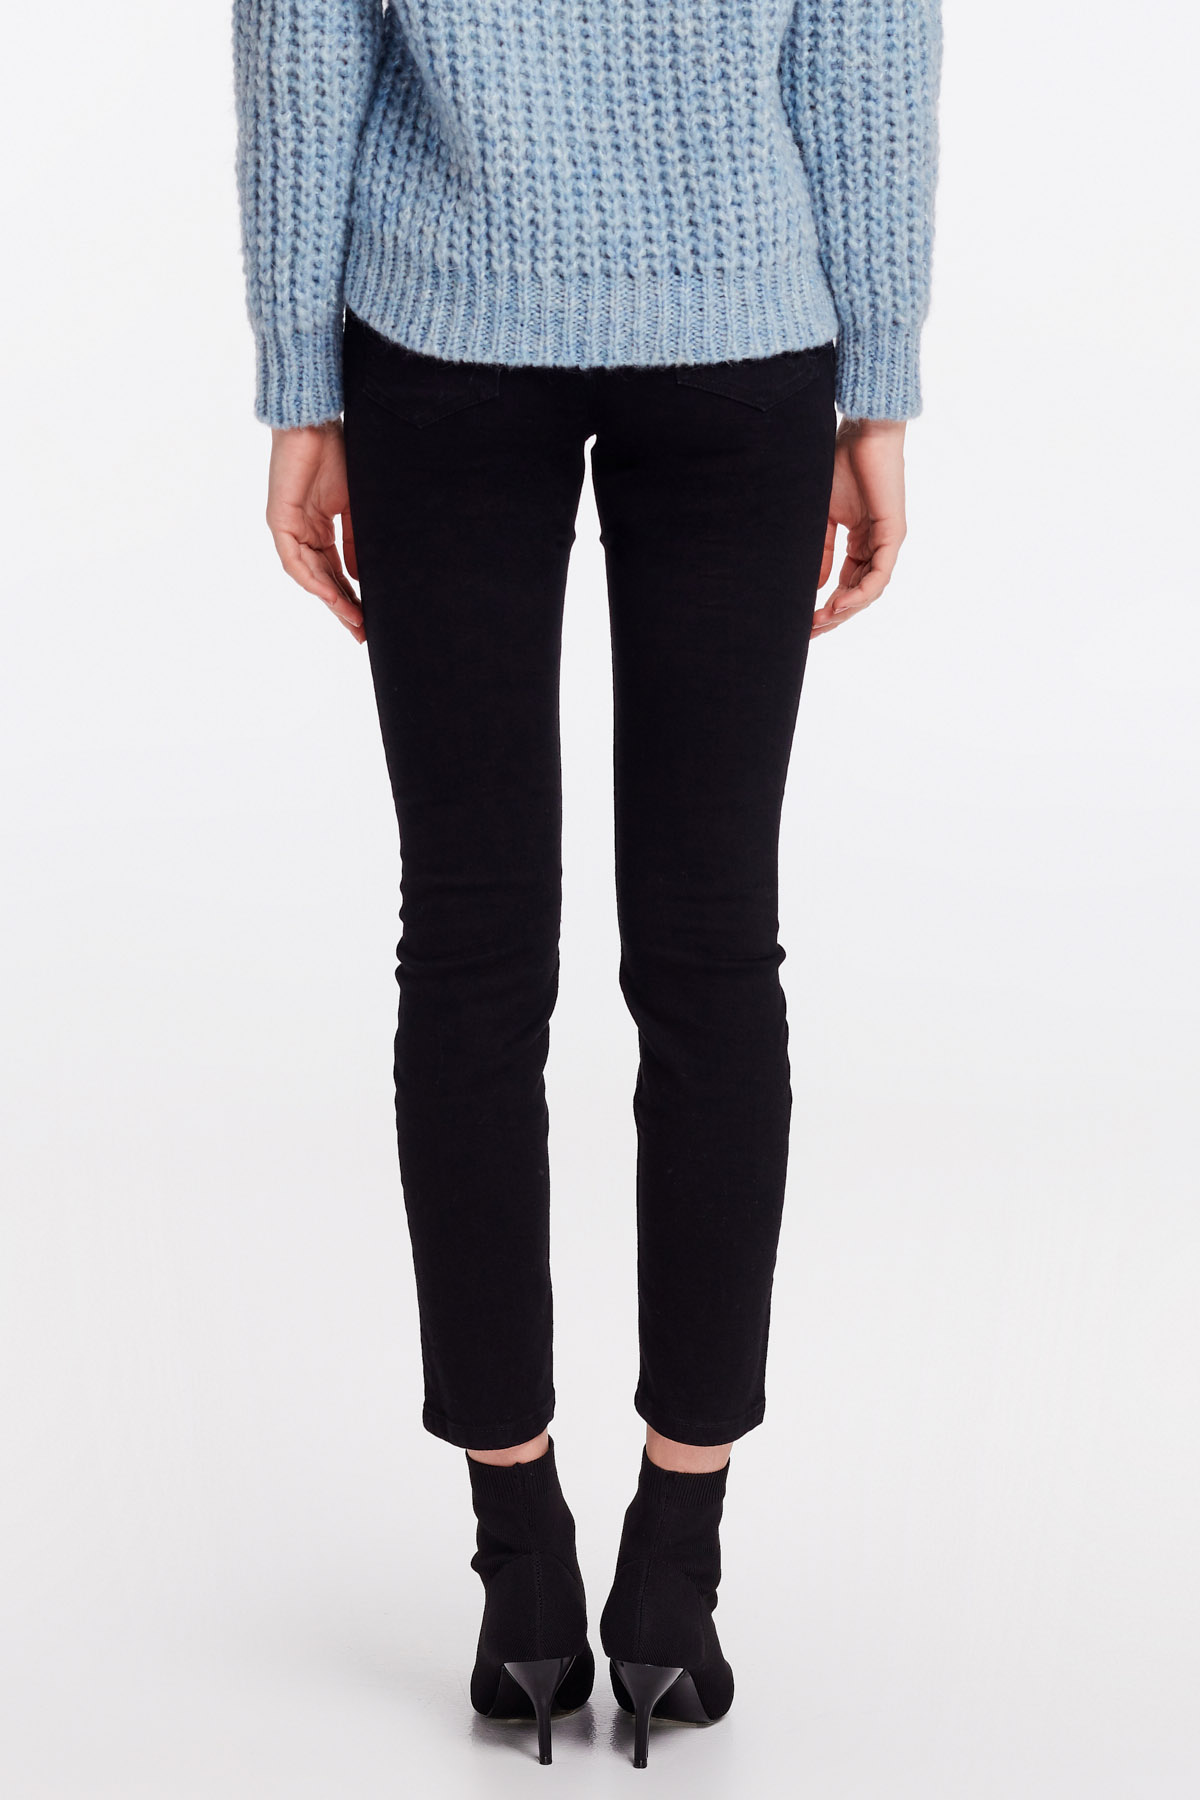 Укороченные узкие черные джинсы, фото 13